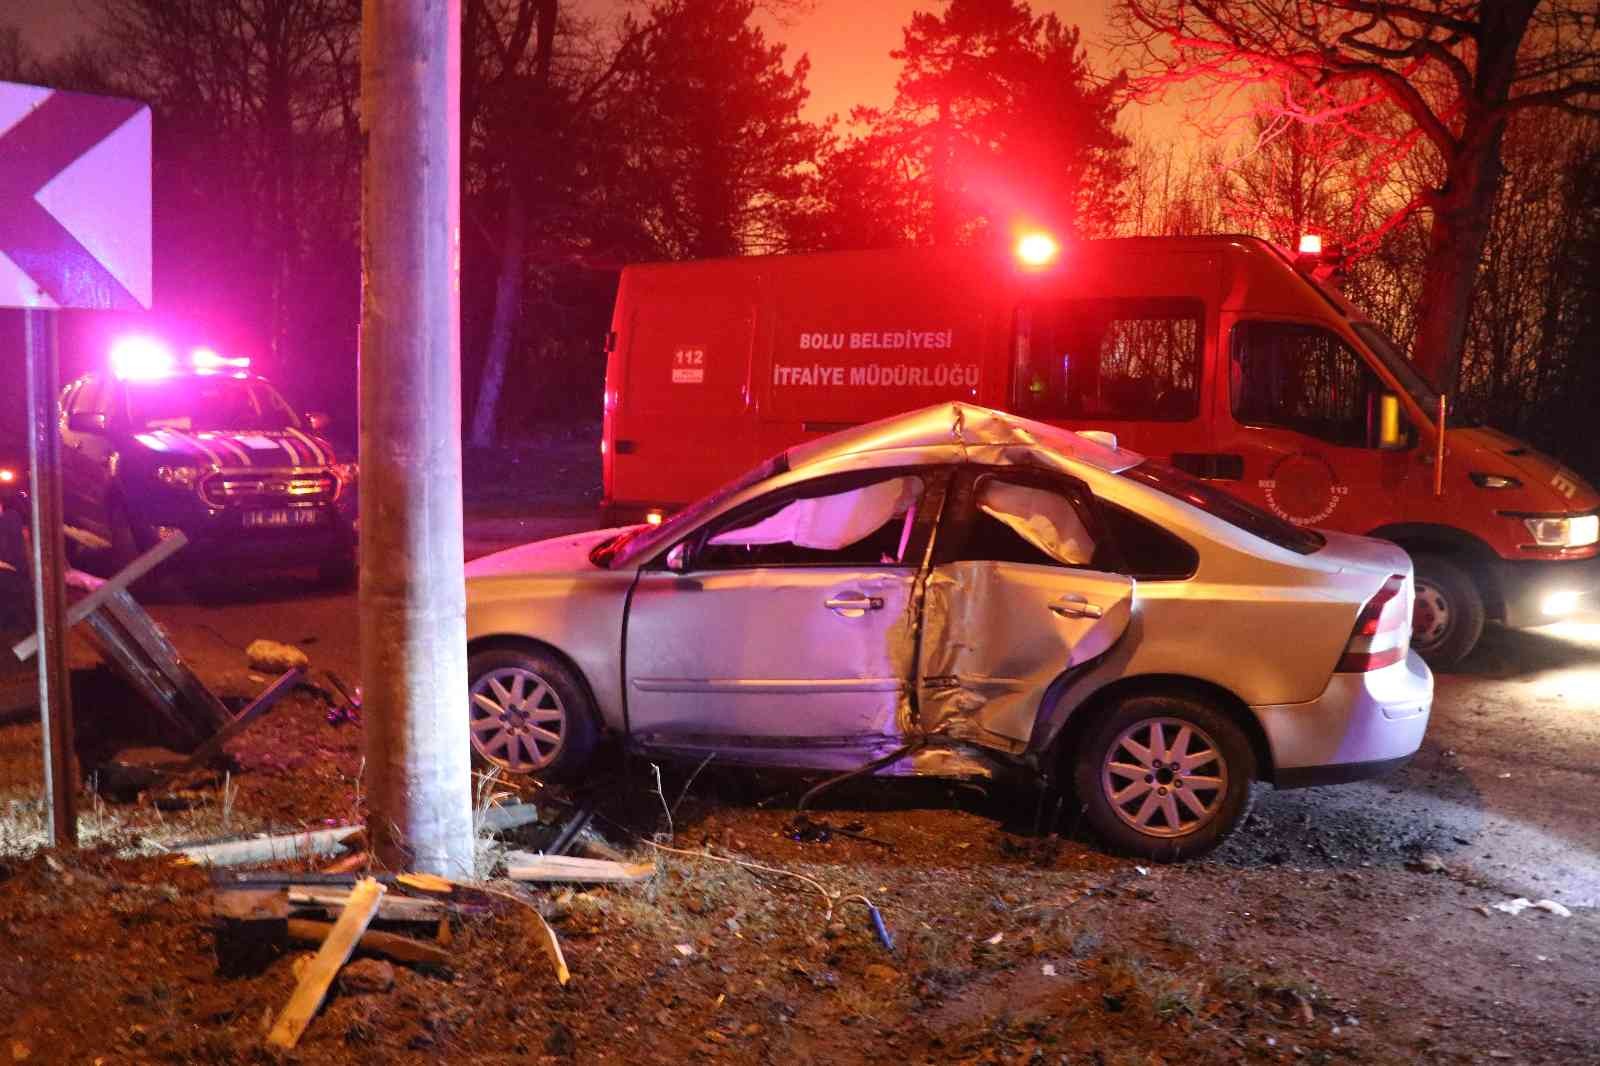 Kaygan yolda kontrolden çıkan otomobil beton direğe çarptı: 1 yaralı #bolu